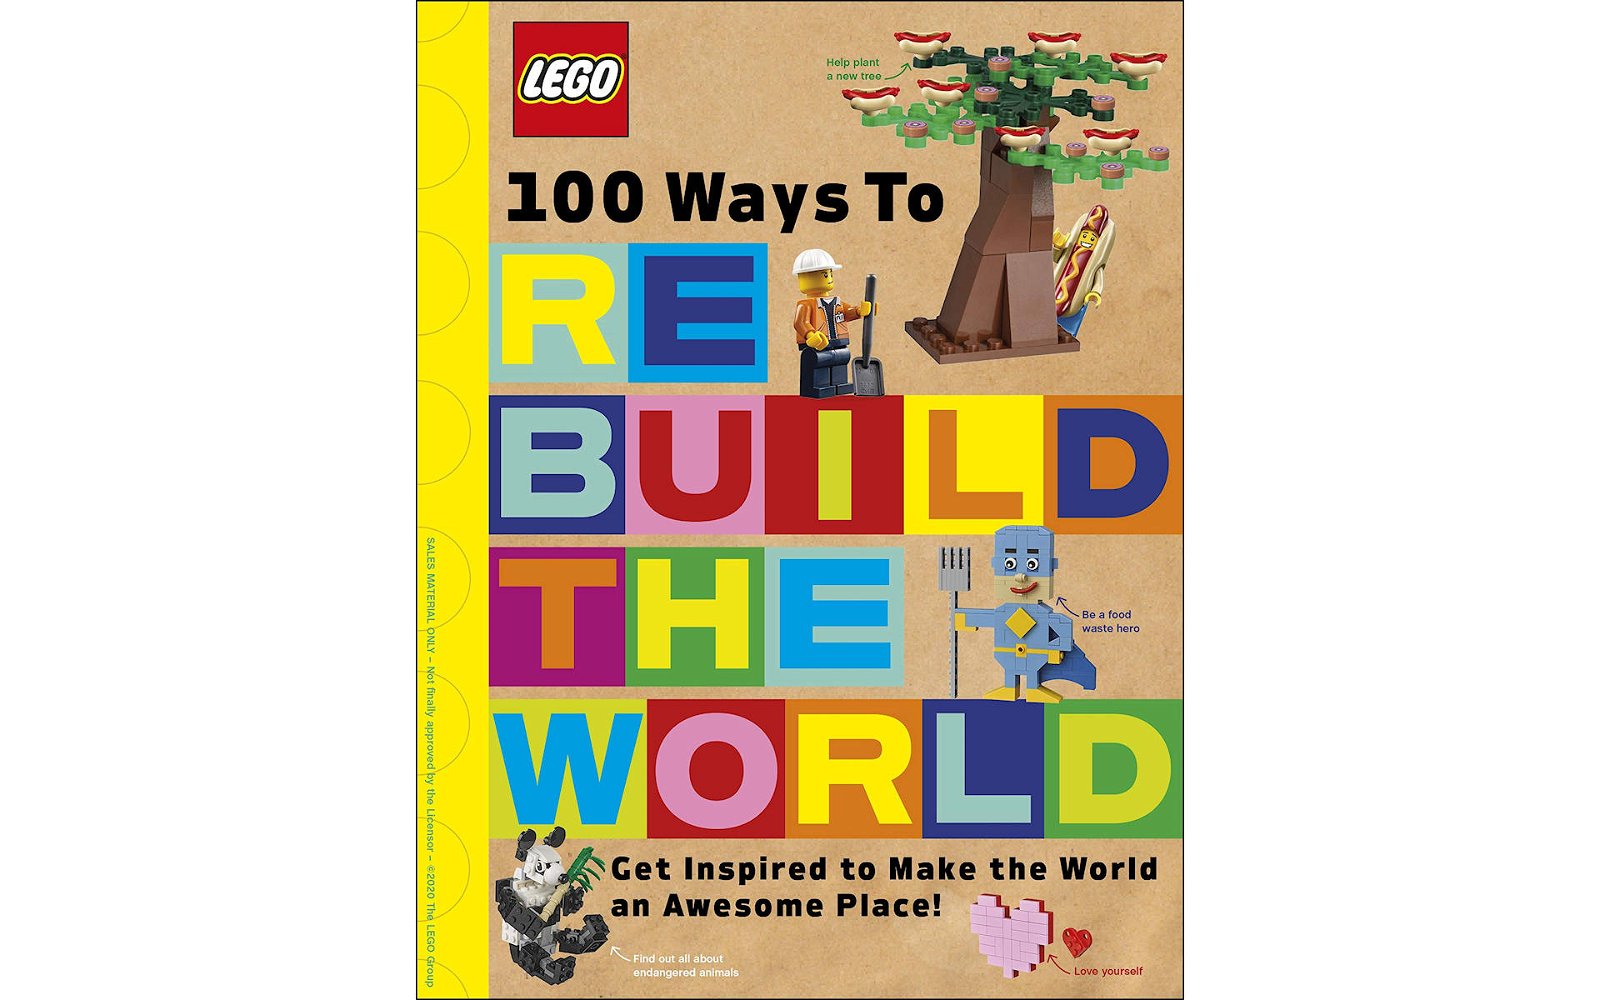 Immagine di LEGO: "100 Ways to Rebuild the World"